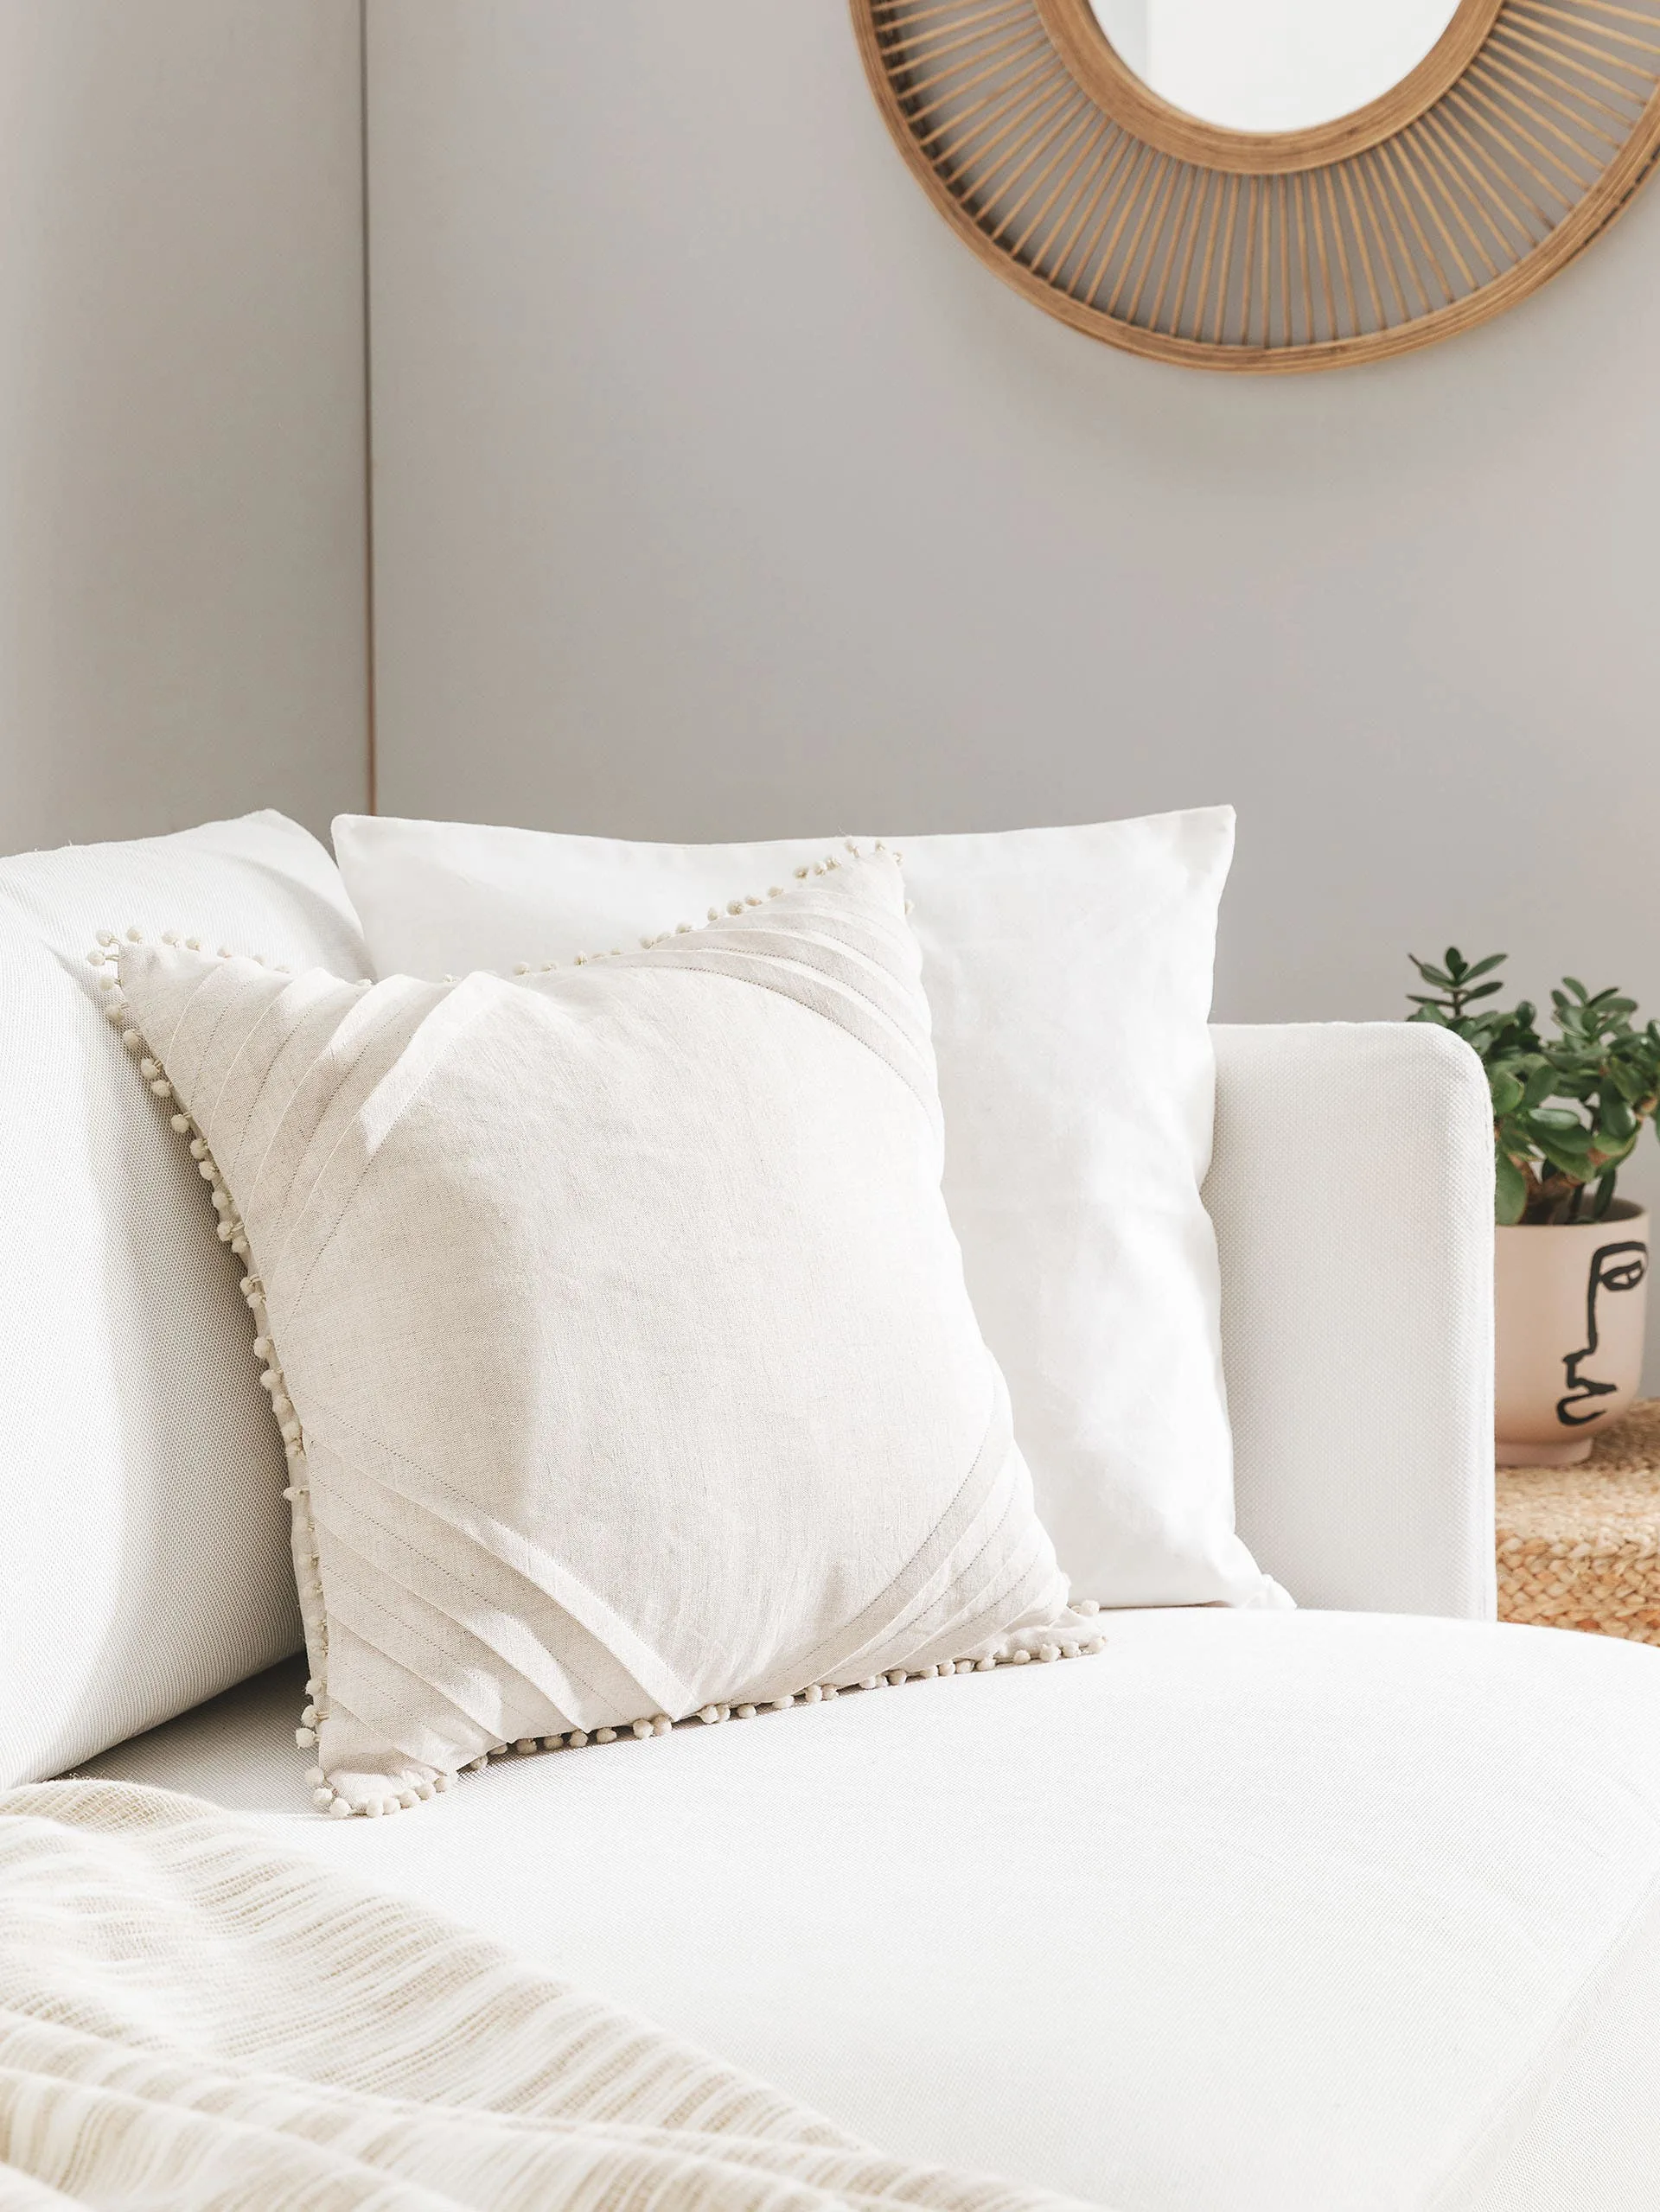 Detailaufnahme von zwei weißen Dekokissen mit Bommeln auf einem weißen Sofa in einem kleinen Wohnzimmer mit hellen Wänden